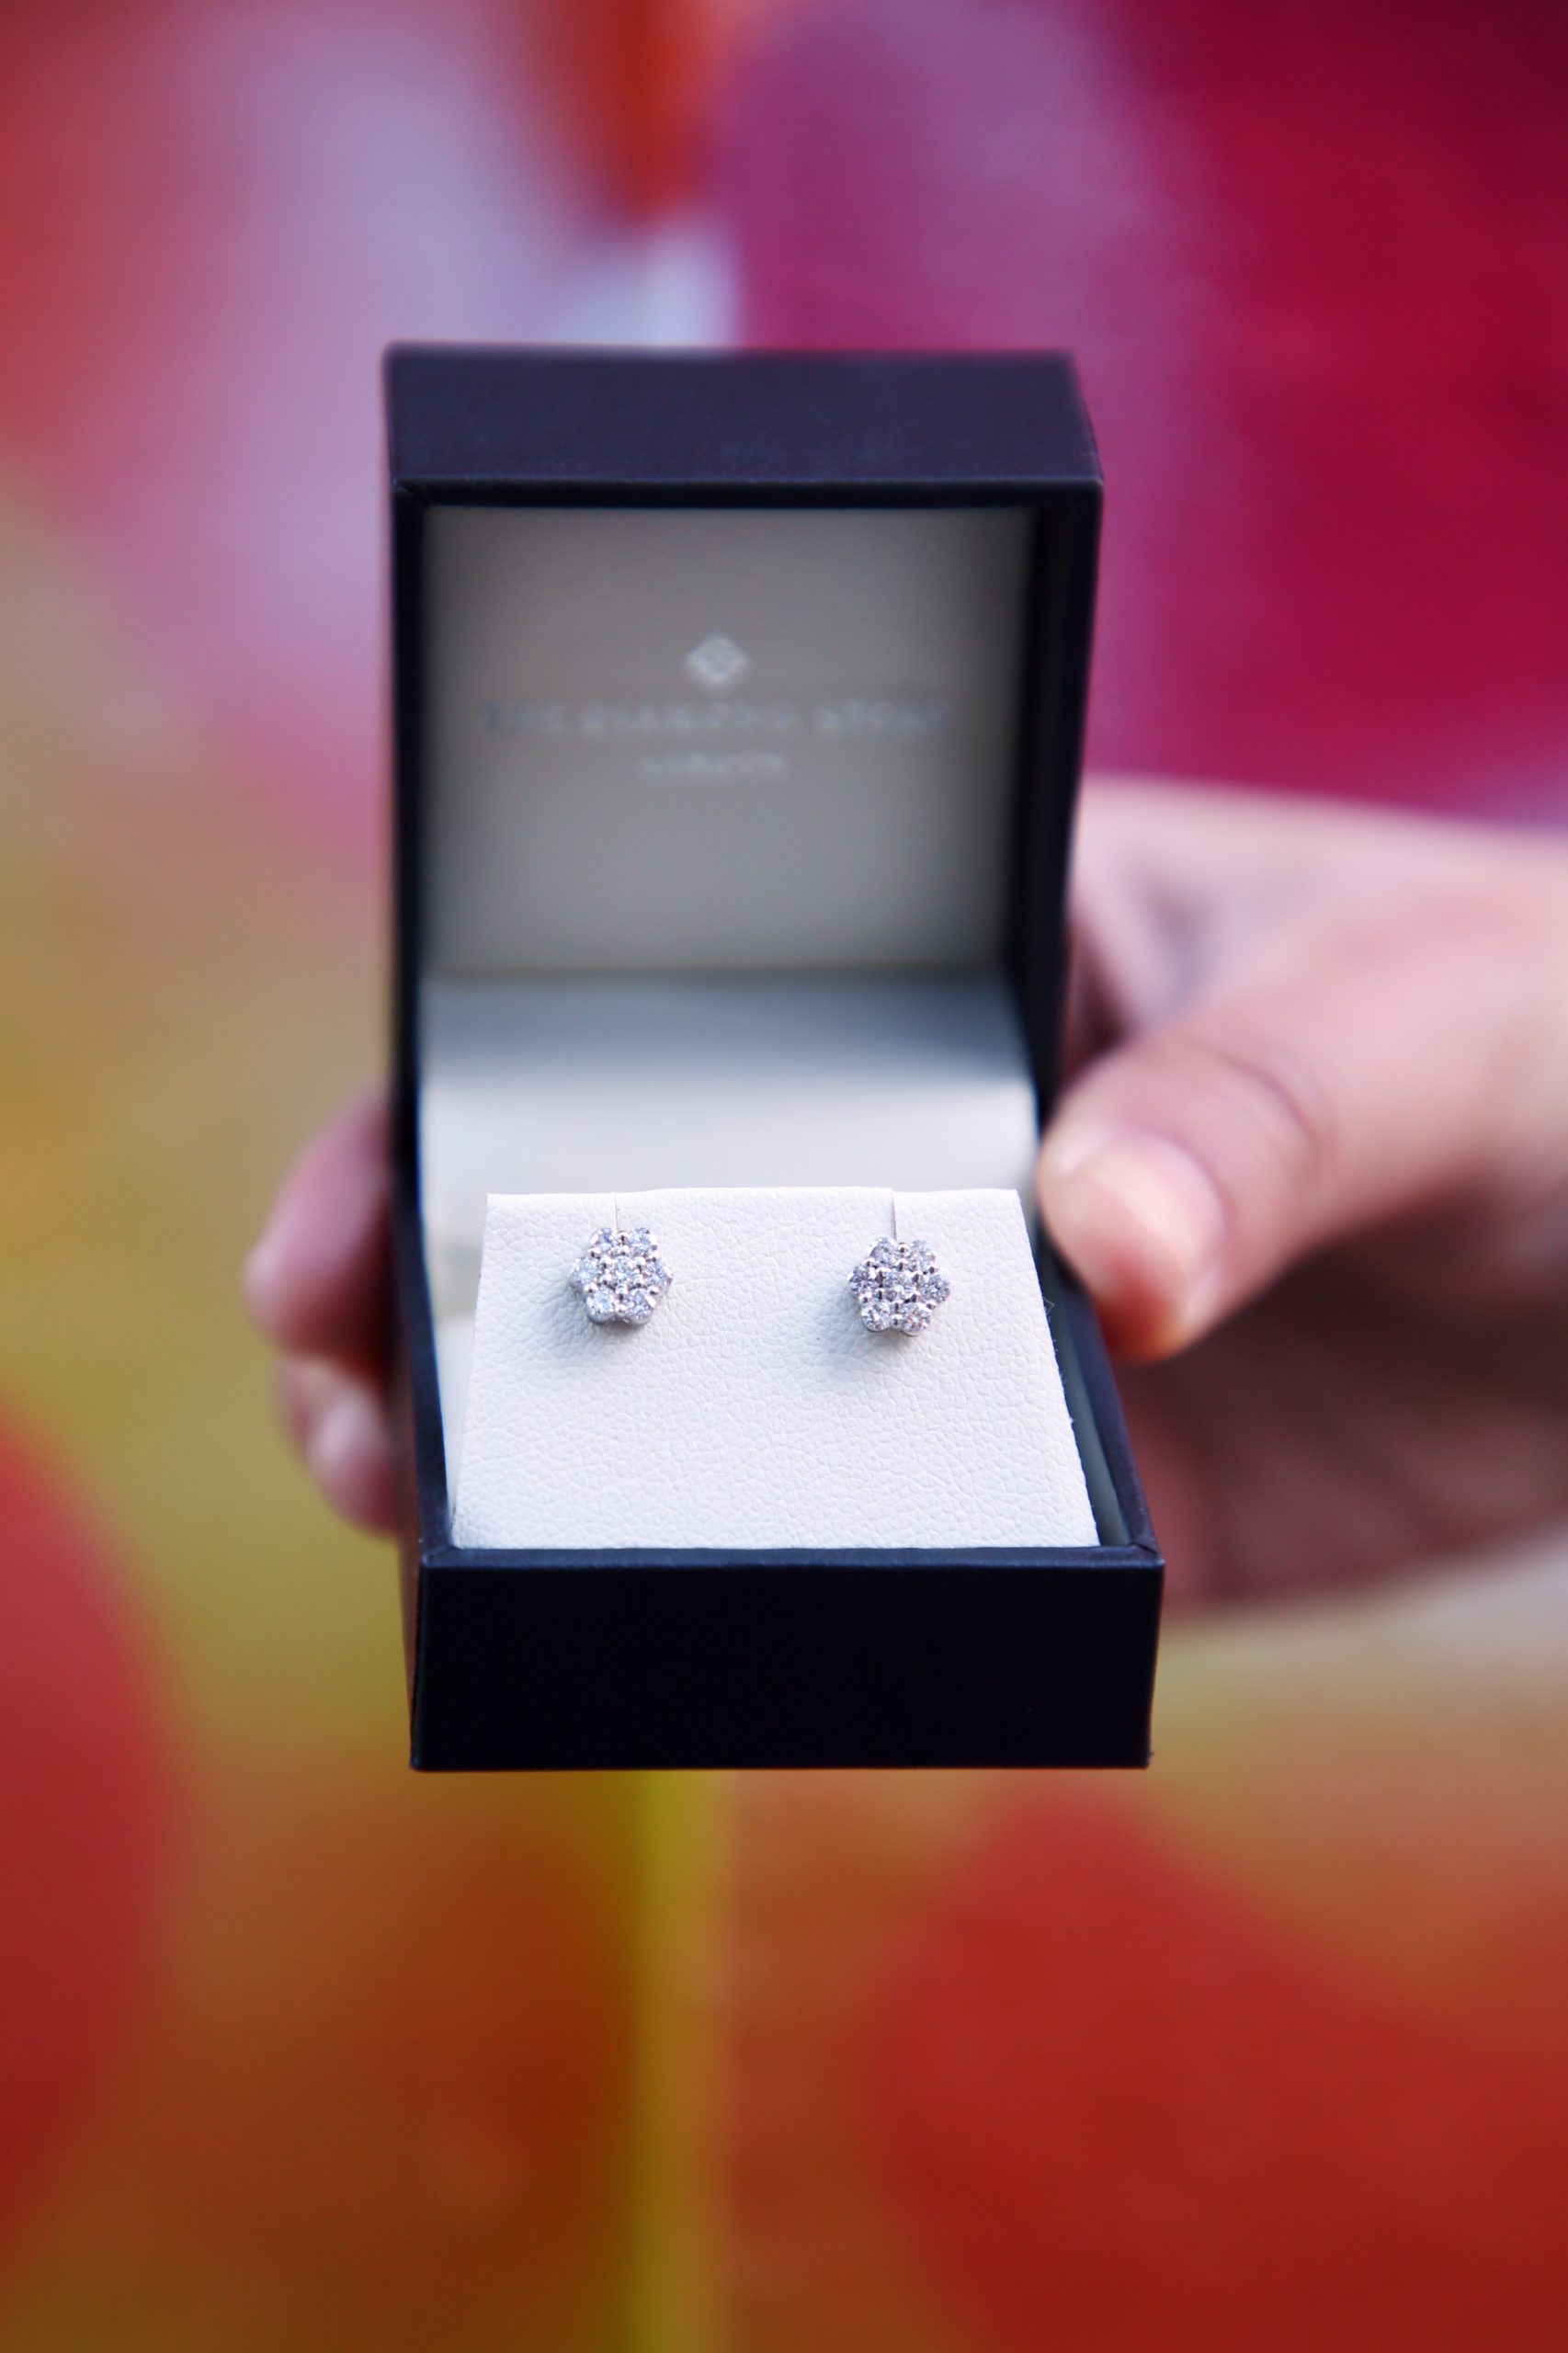 <img src="Diamond.jpg" alt="Diamond Store ethical cluster earrings"/> 